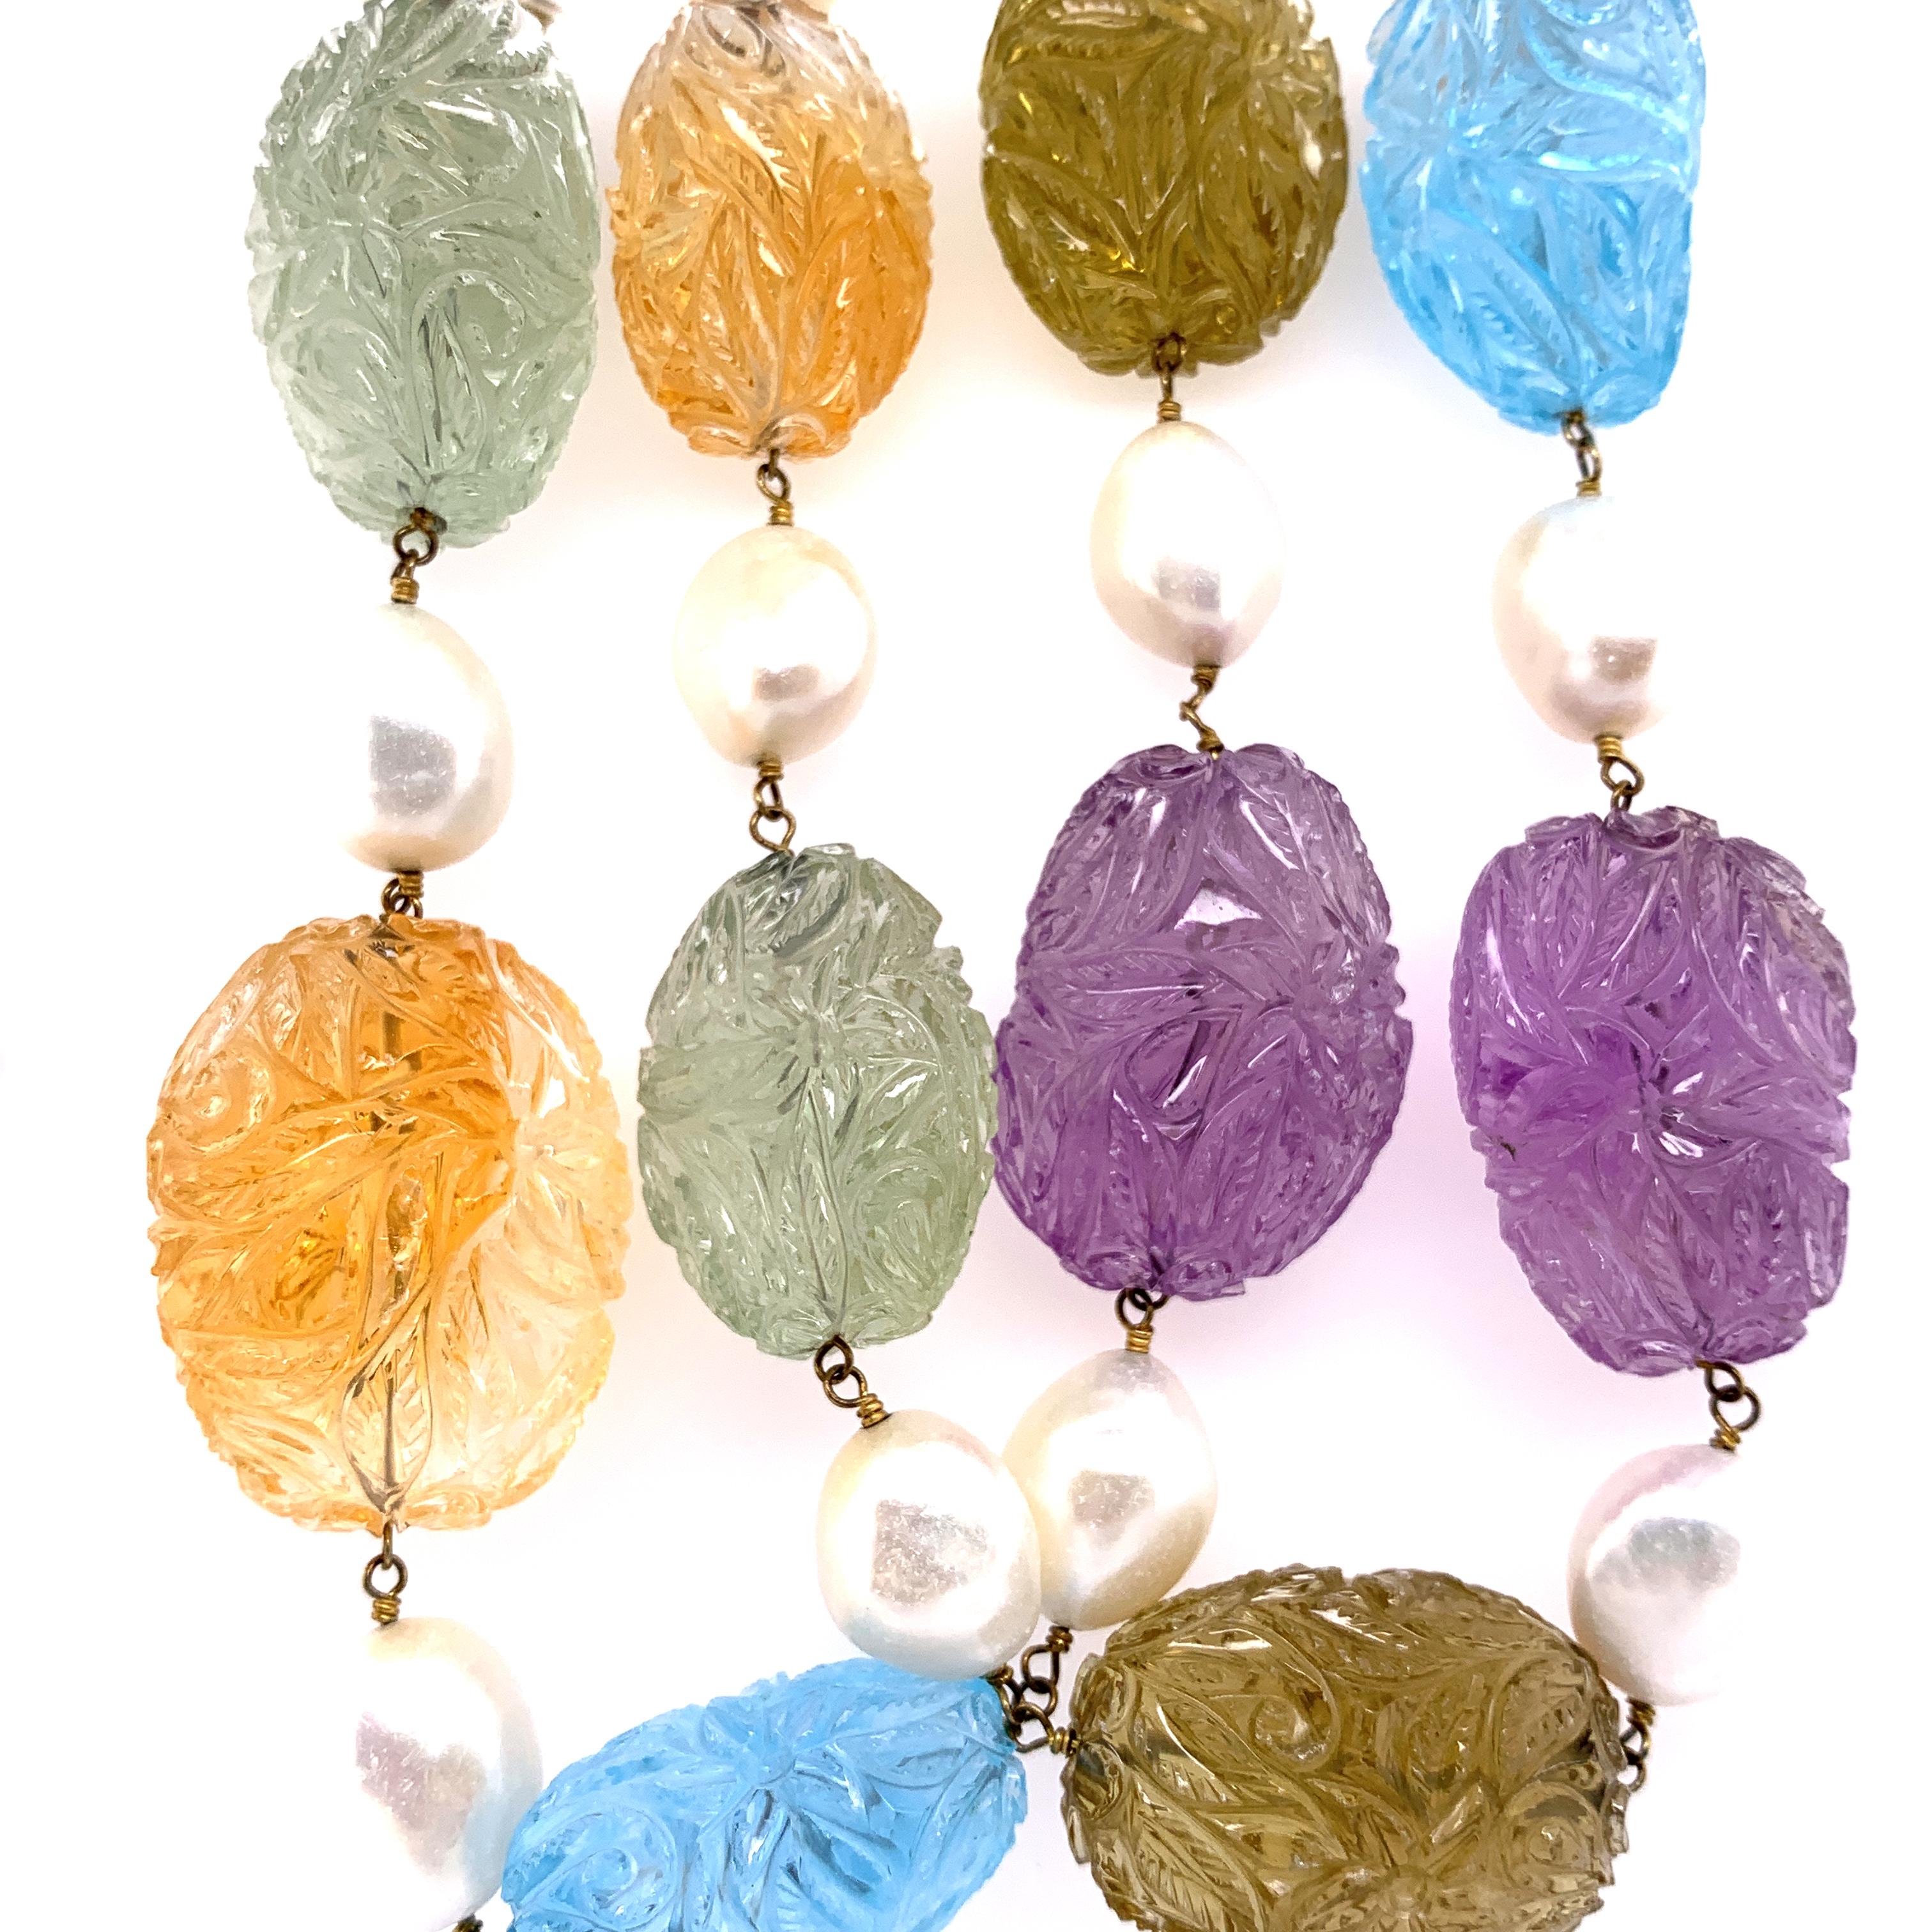 Collier en perles sculptées multi-pierres, perle de culture et diamant blanc en or :

Ce collier rare et magnifique est composé d'un ensemble de pierres précieuses taillées, dont des topazes bleues, des améthystes et des citrines pesant 1355.85